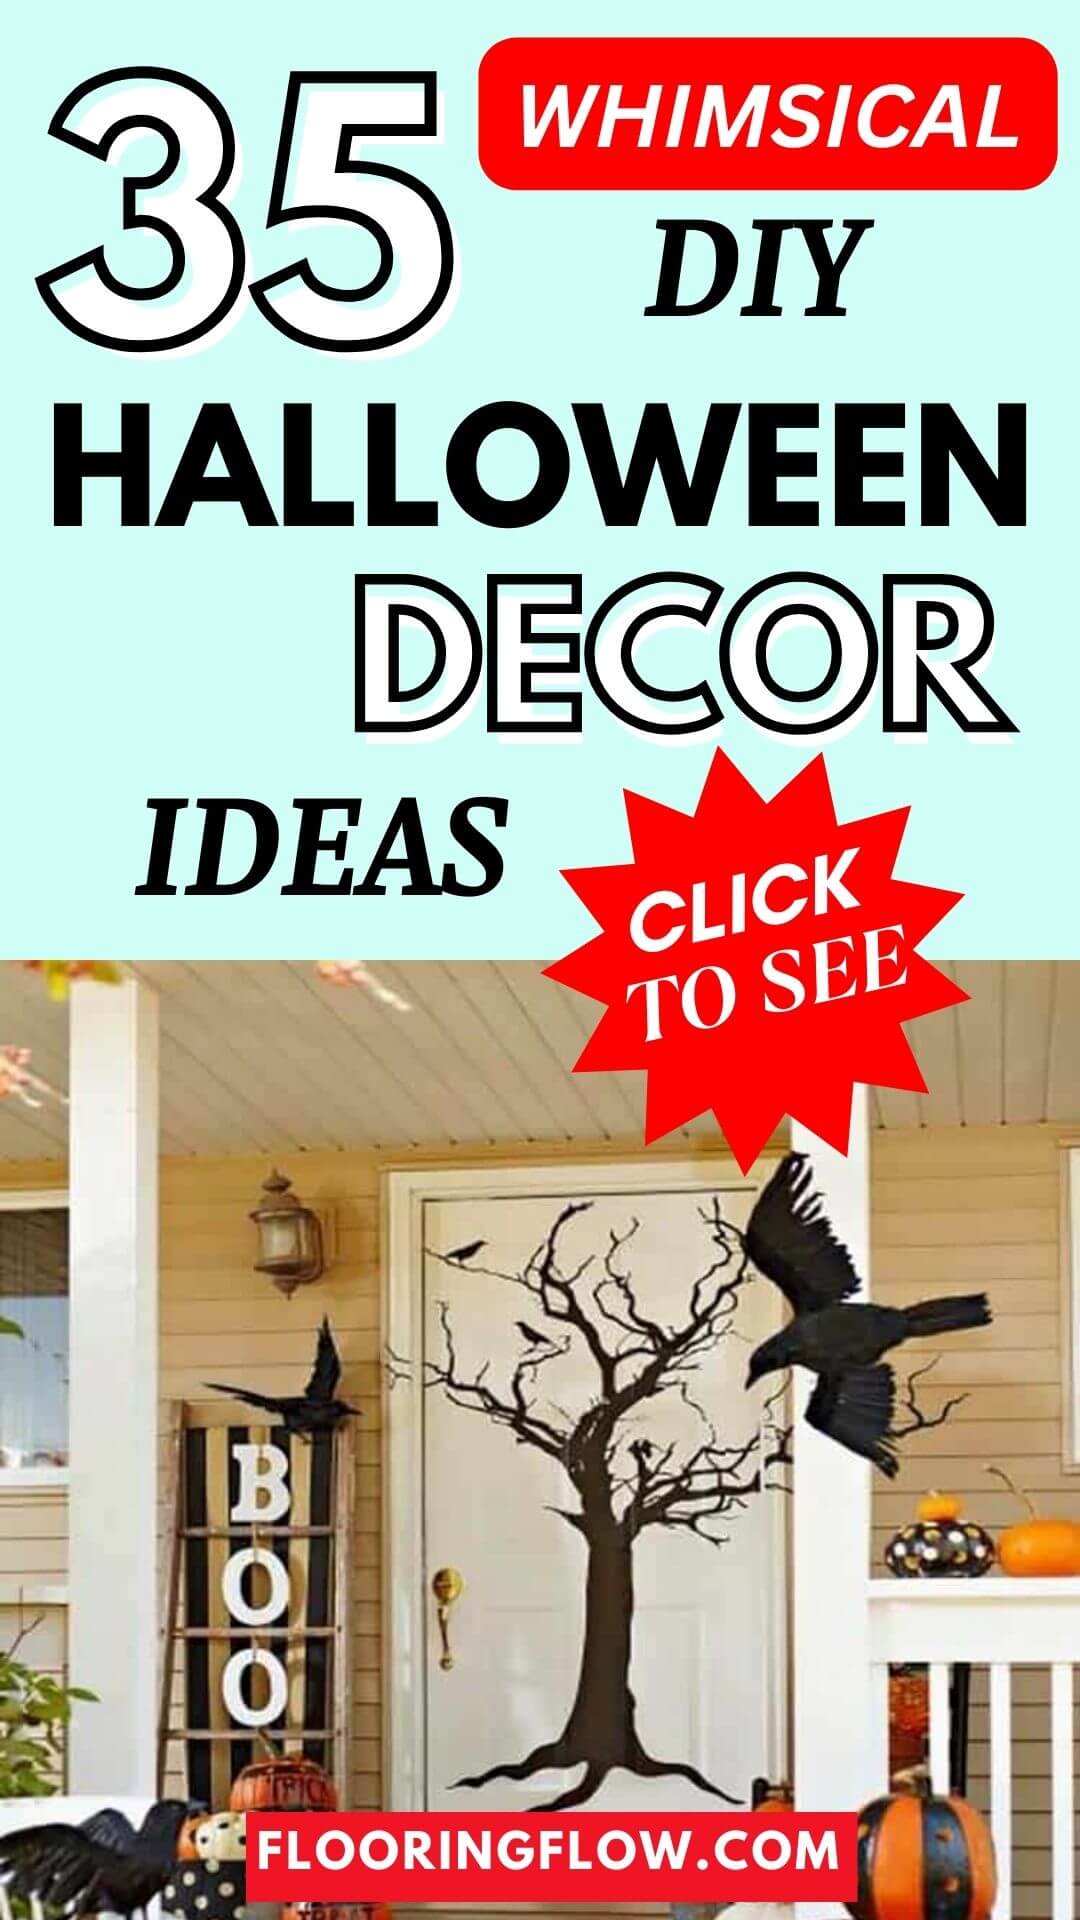 DIY Whimsical Halloween decor ideas